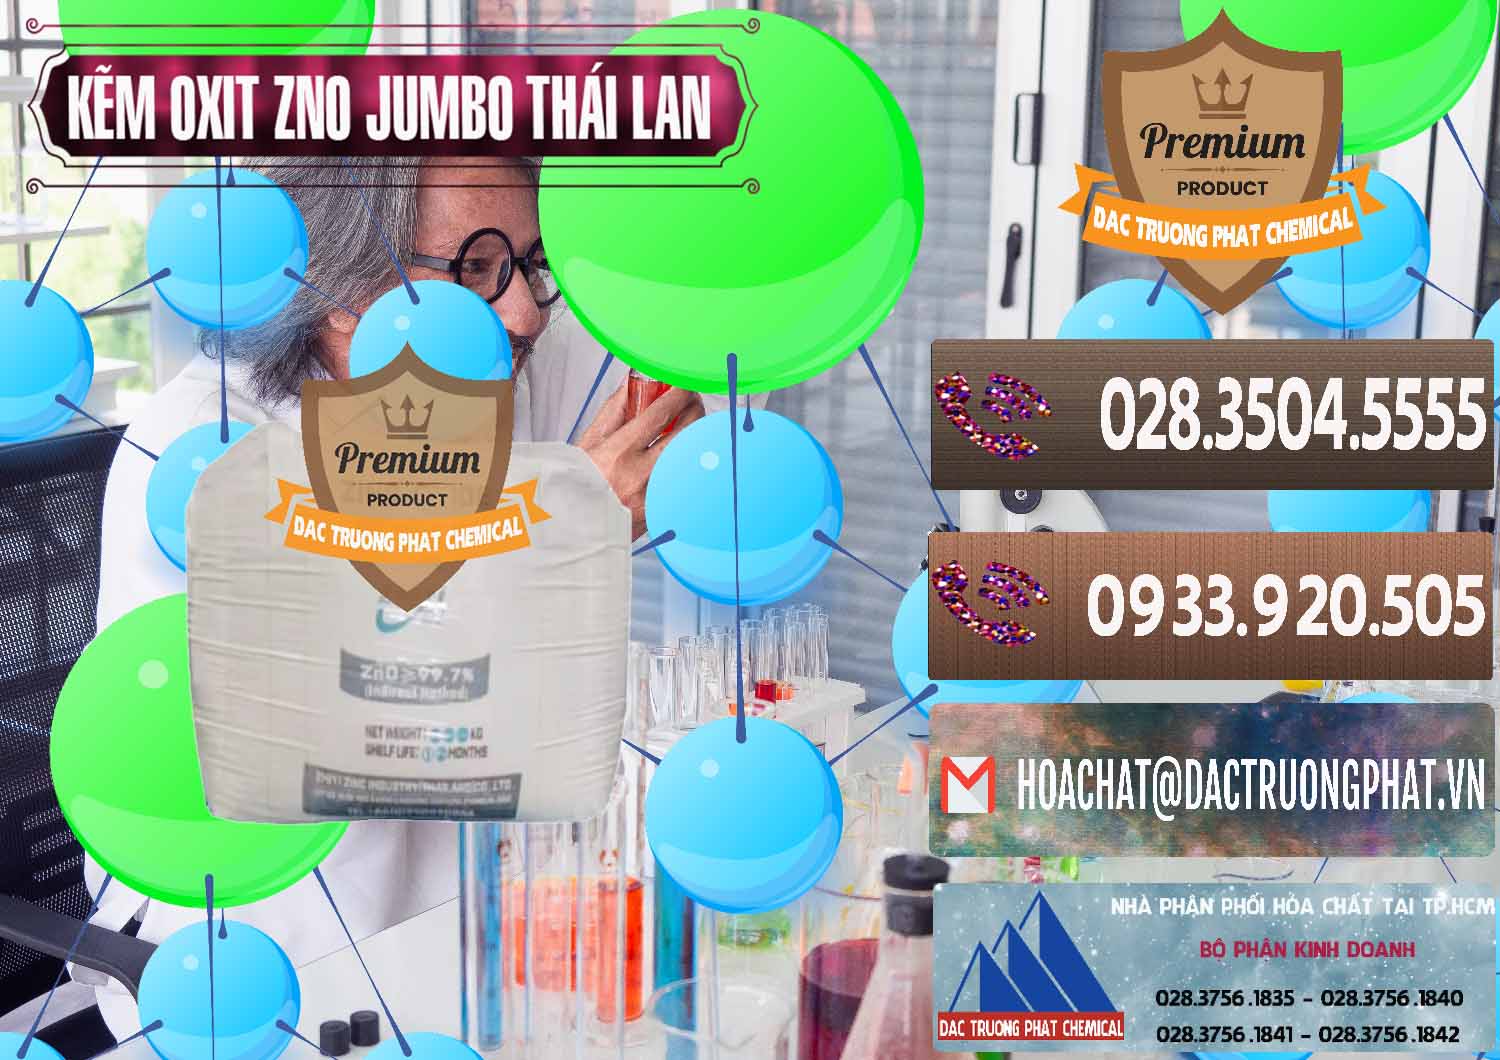 Cty chuyên phân phối - bán Zinc Oxide - Bột Kẽm Oxit ZNO Jumbo Bành Thái Lan Thailand - 0370 - Đơn vị chuyên bán - cung cấp hóa chất tại TP.HCM - hoachatviet.net